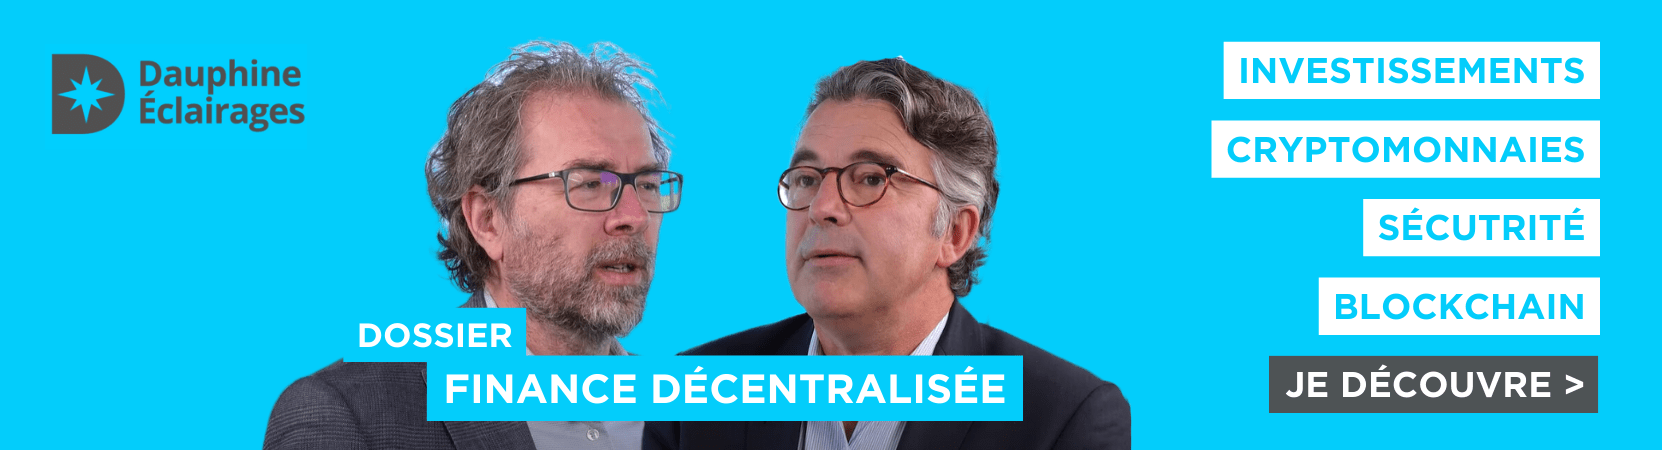 Dauphine Eclairages : Dossier Finance décentralisée